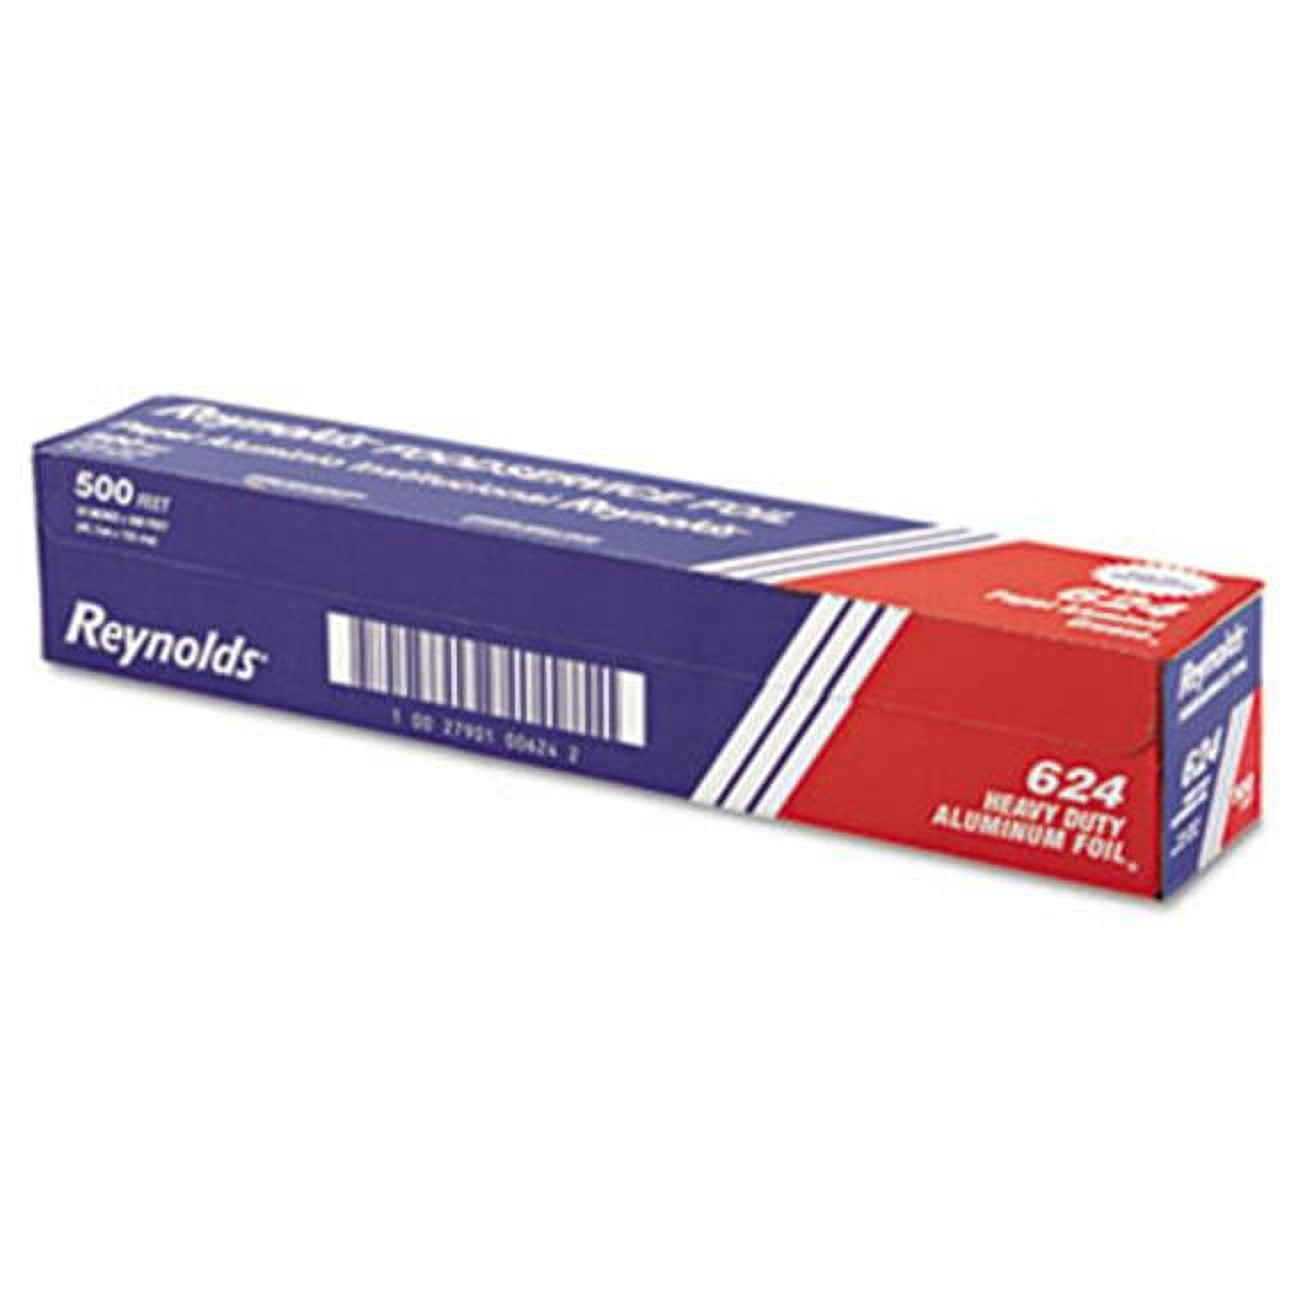 Reynolds Wrap Heavy Duty Aluminum Foil Roll 18 x 500 ft Silver 624 